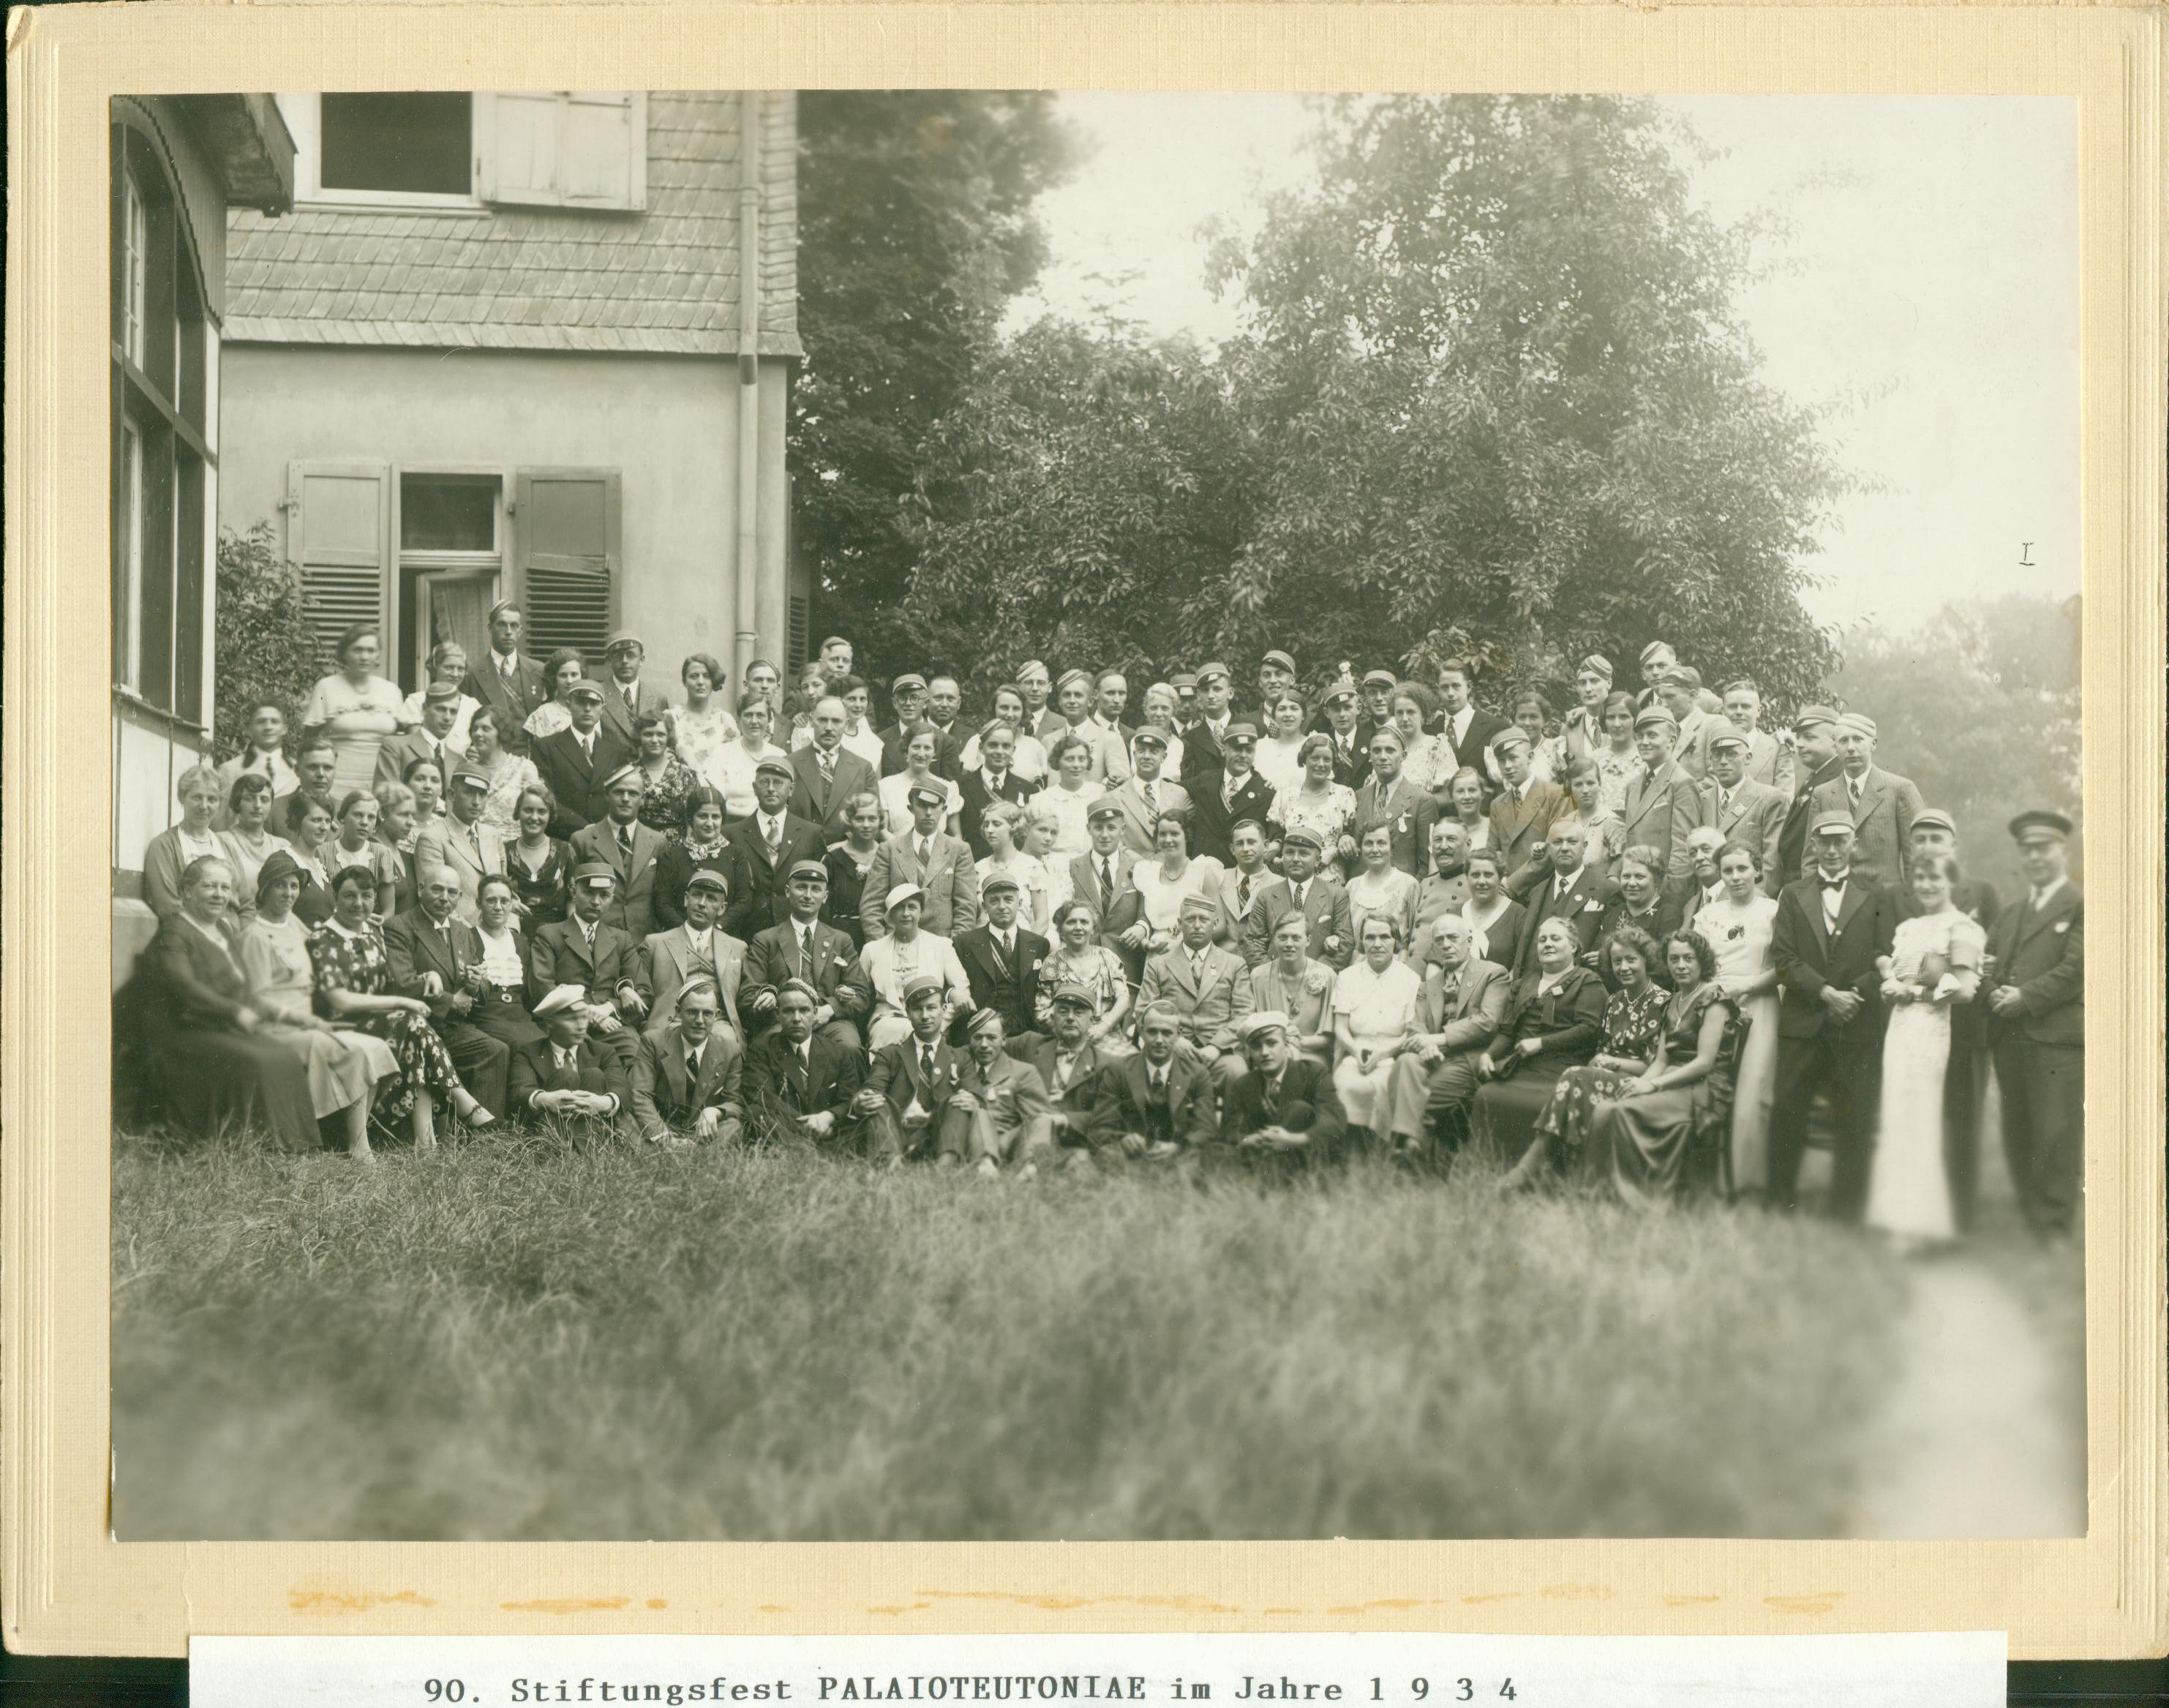 1934: 90.Stiftungsfest - Landsmannschaft PalaioTeutonia Bonn